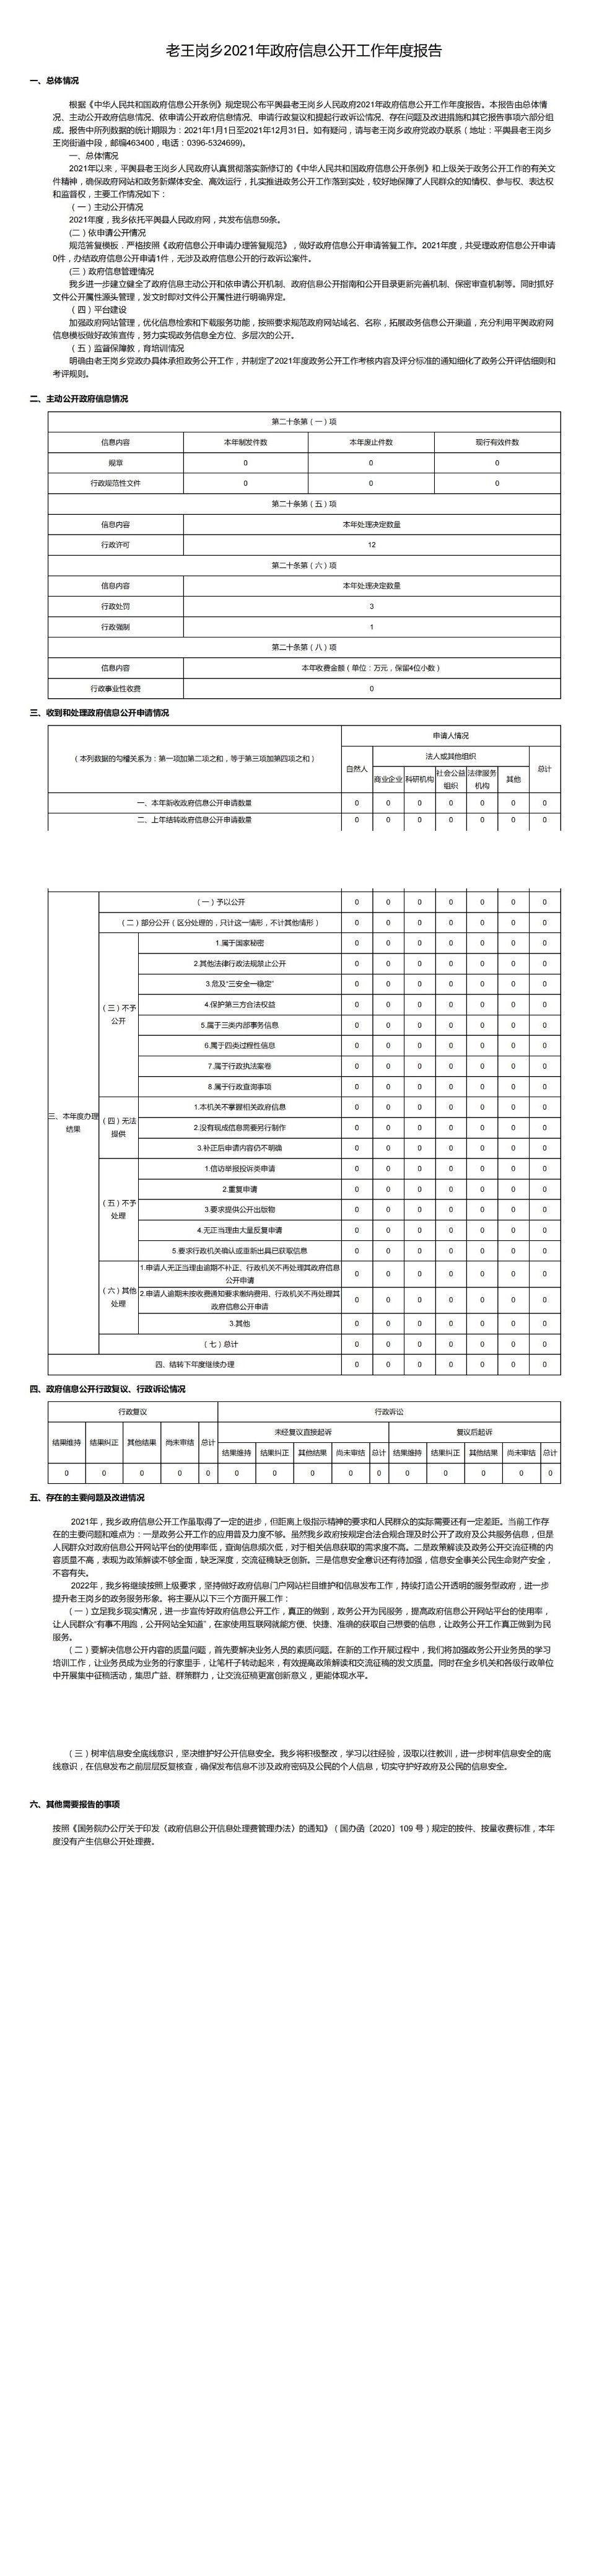 老王岗乡2021年政府信息公开工作年度报告_00.jpg